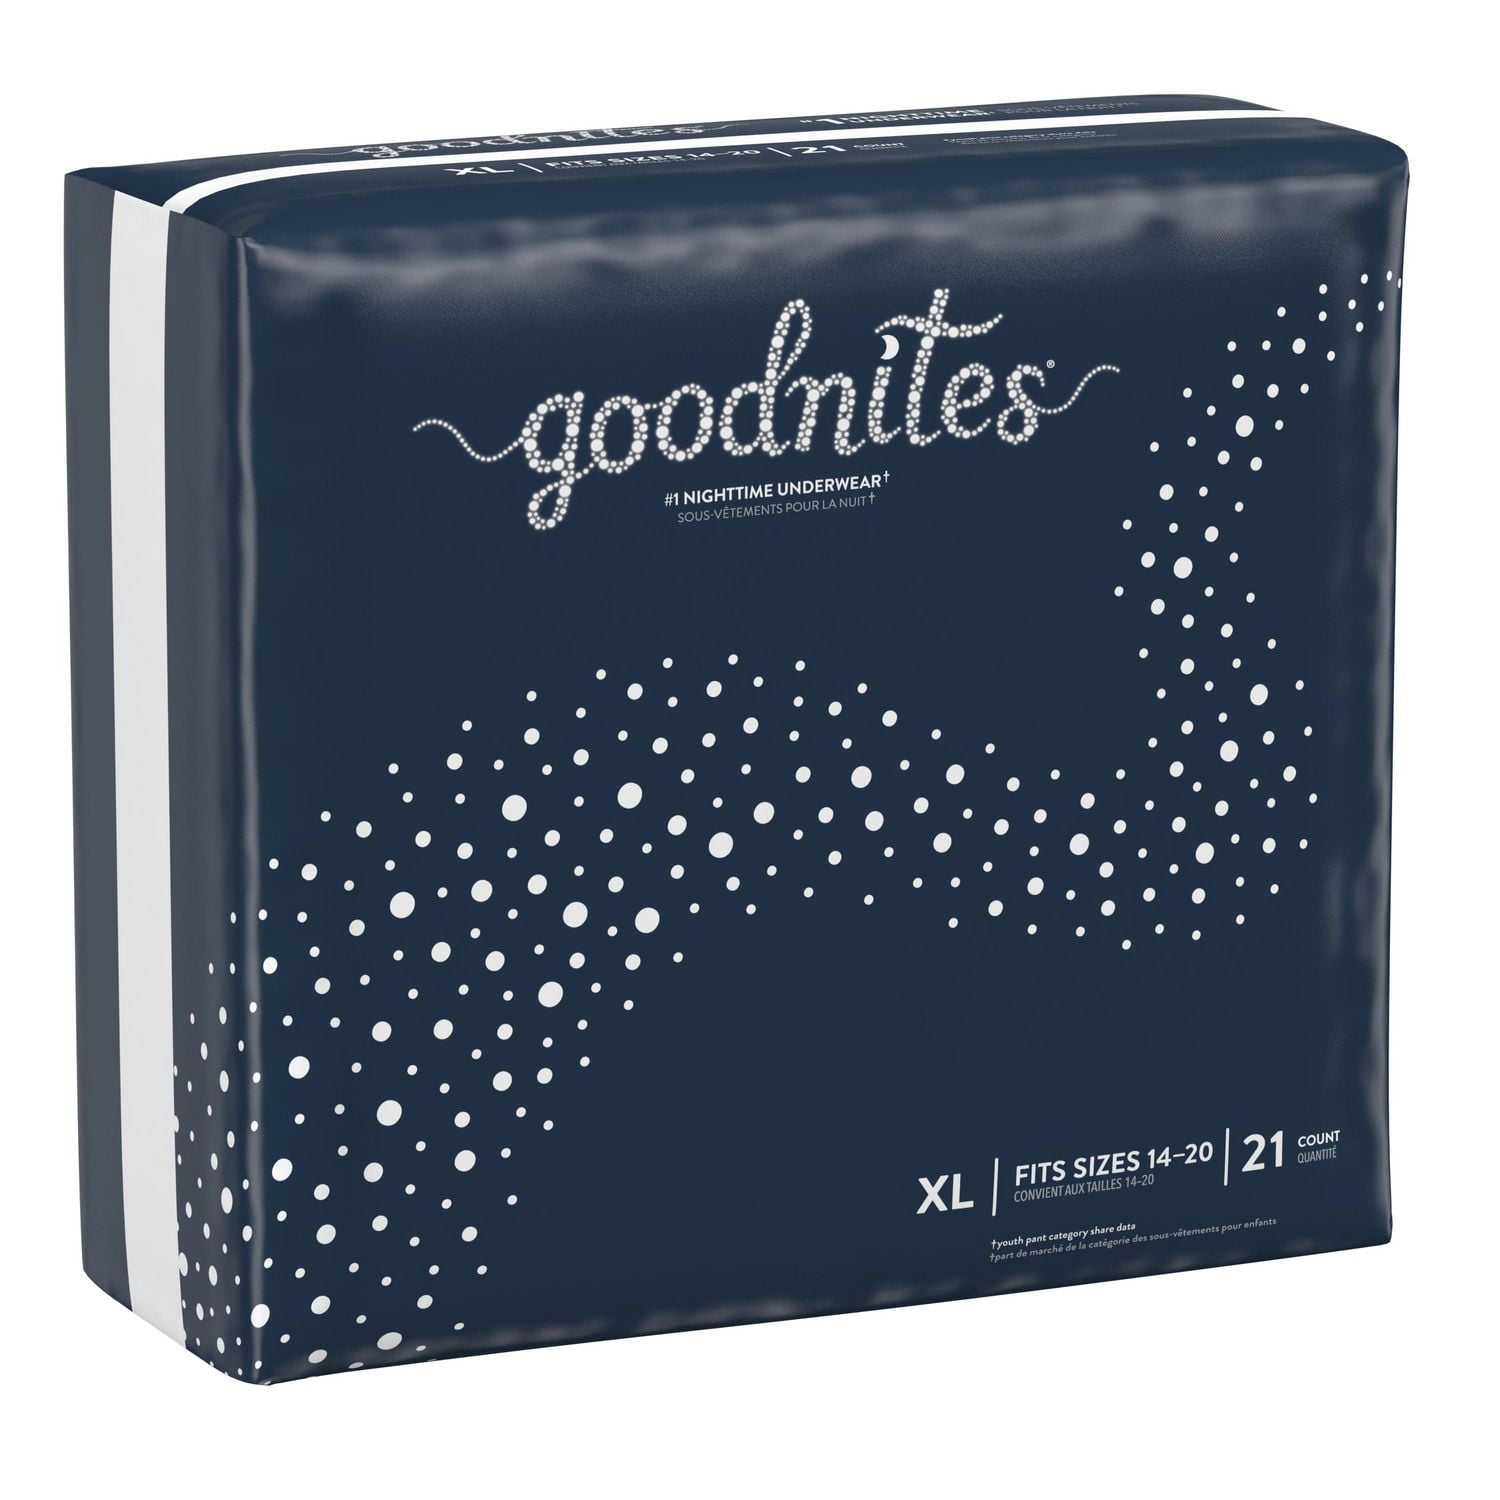 Goodnites Girls' Nighttime Bedwetting Underwear, XL (95-140+ lb